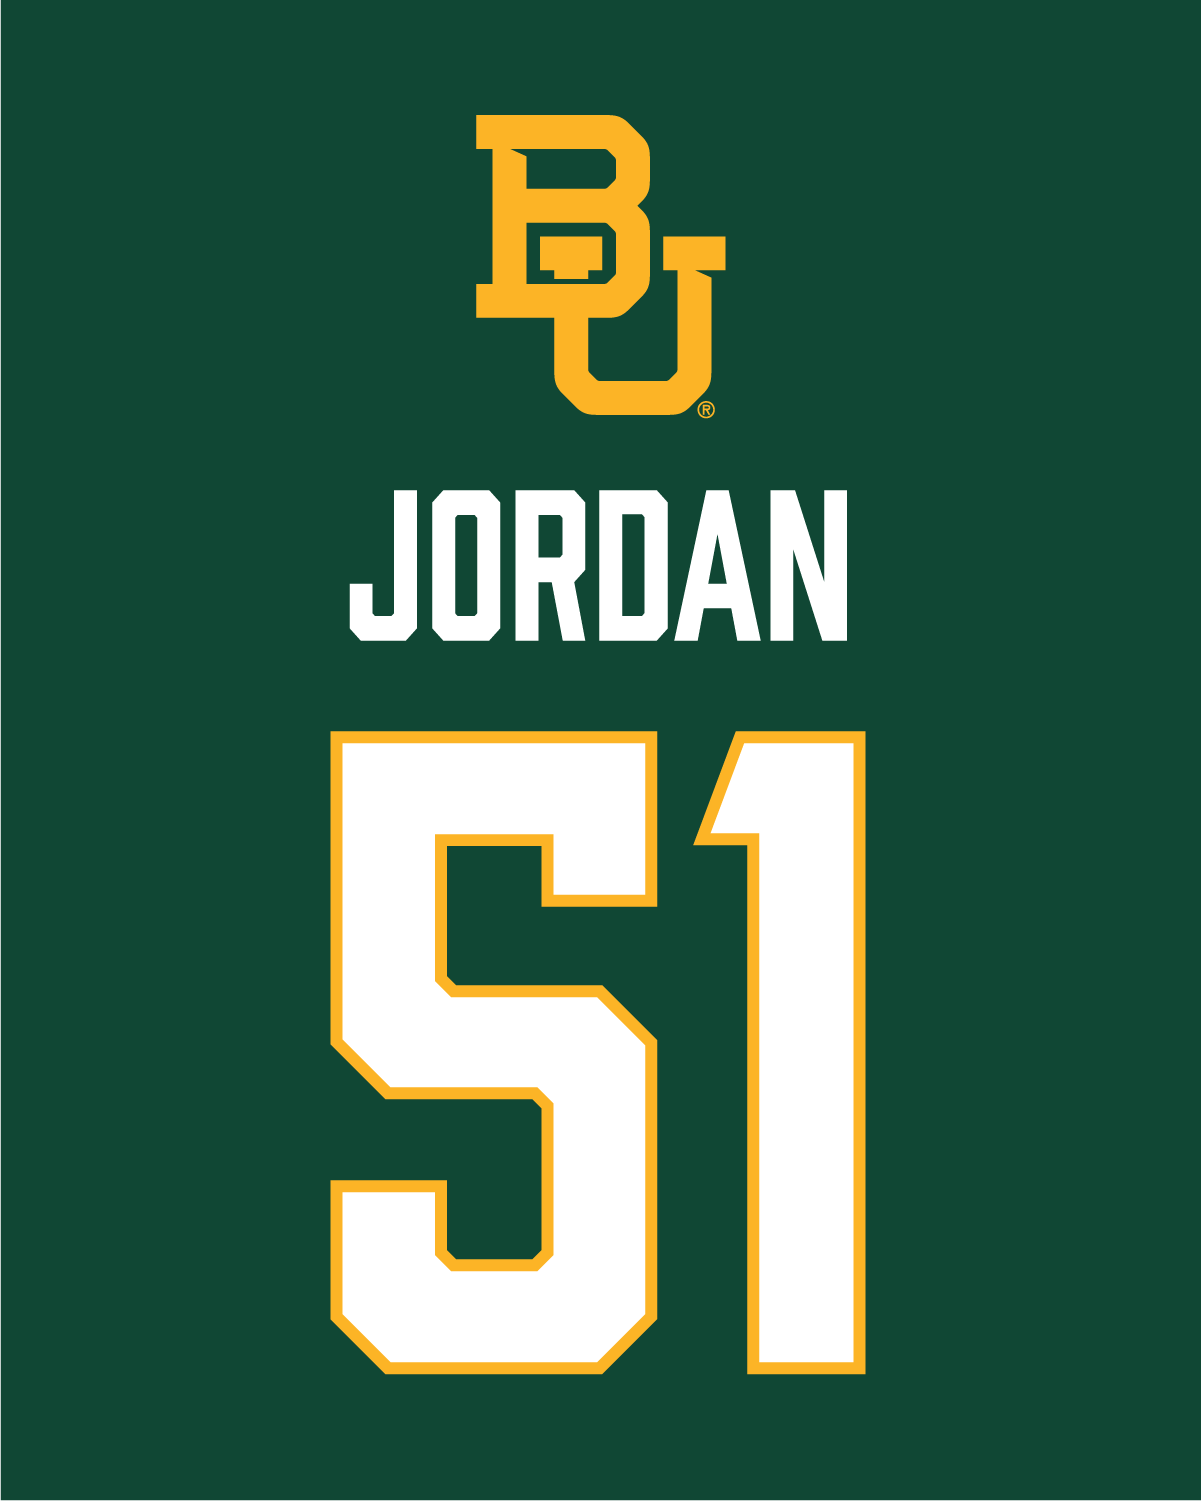 Kyler Jordan | #51